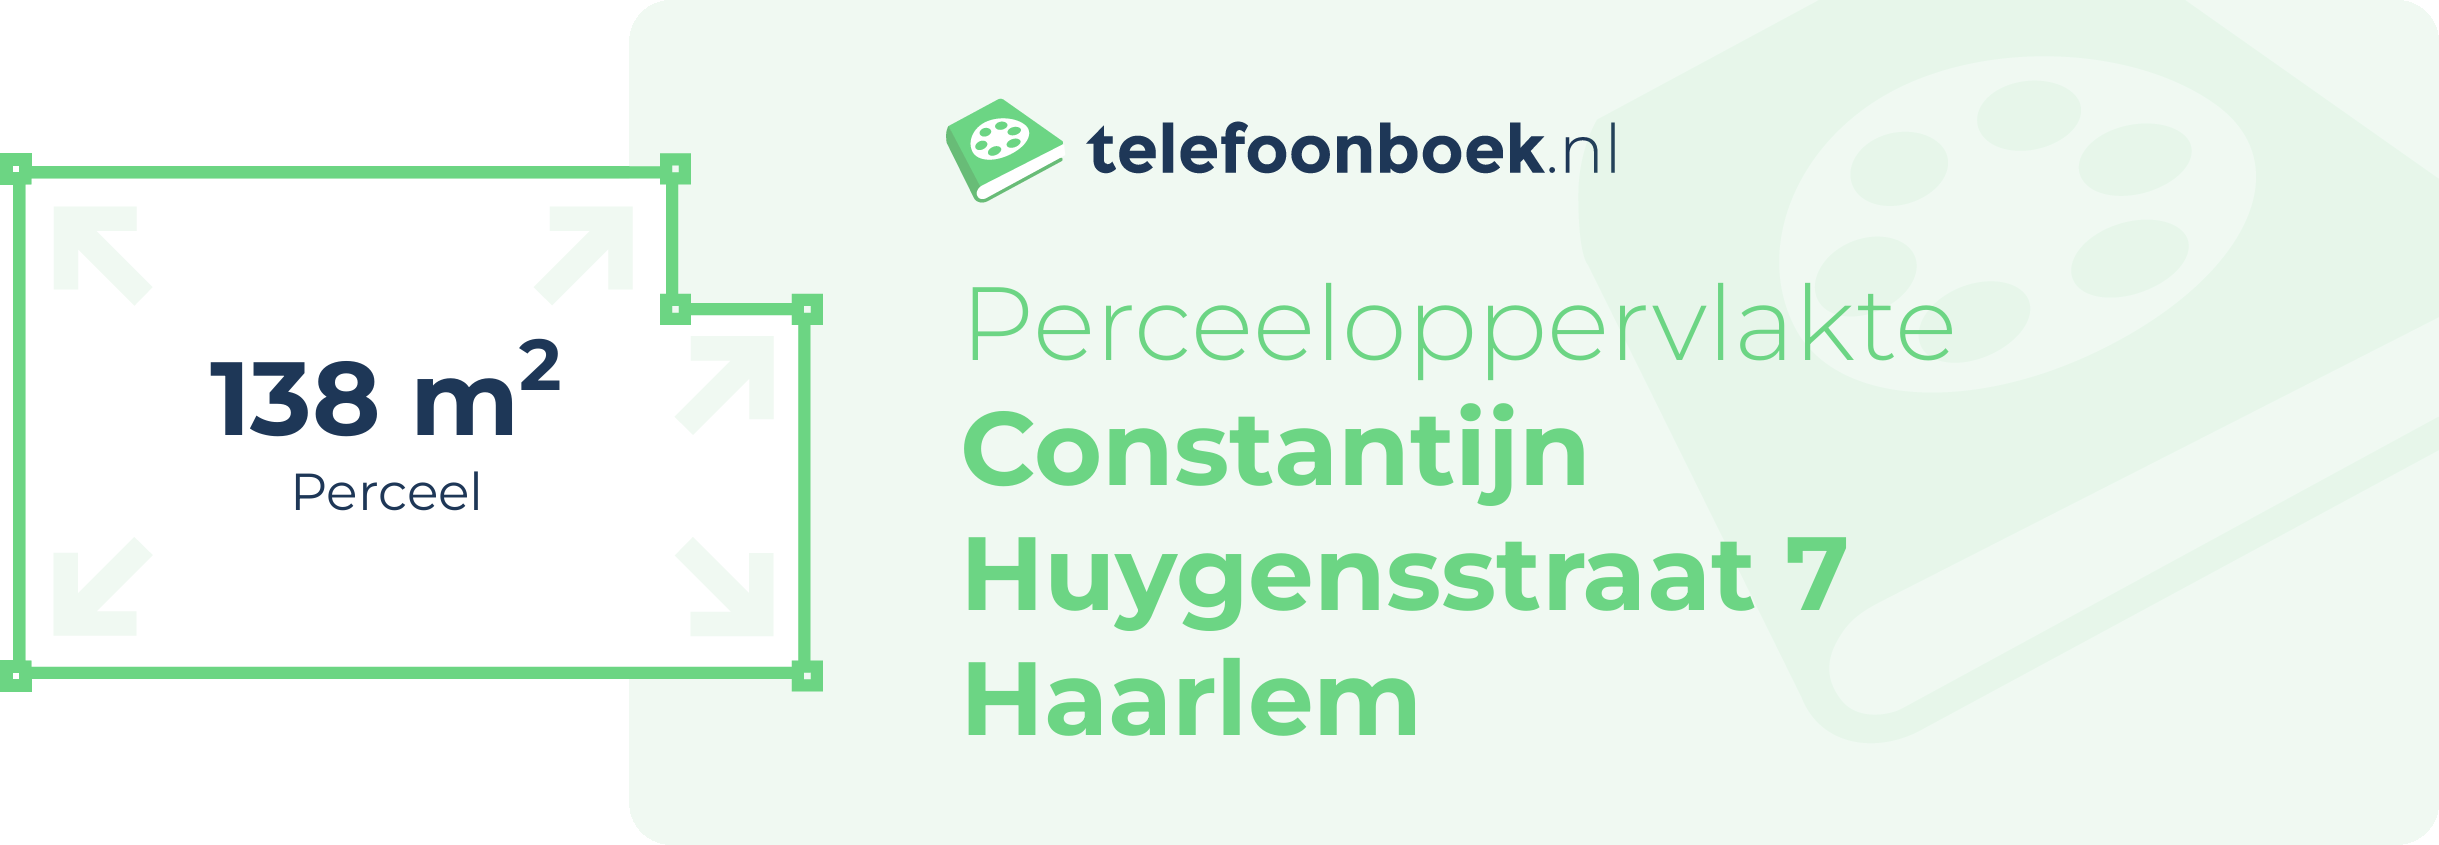 Perceeloppervlakte Constantijn Huygensstraat 7 Haarlem